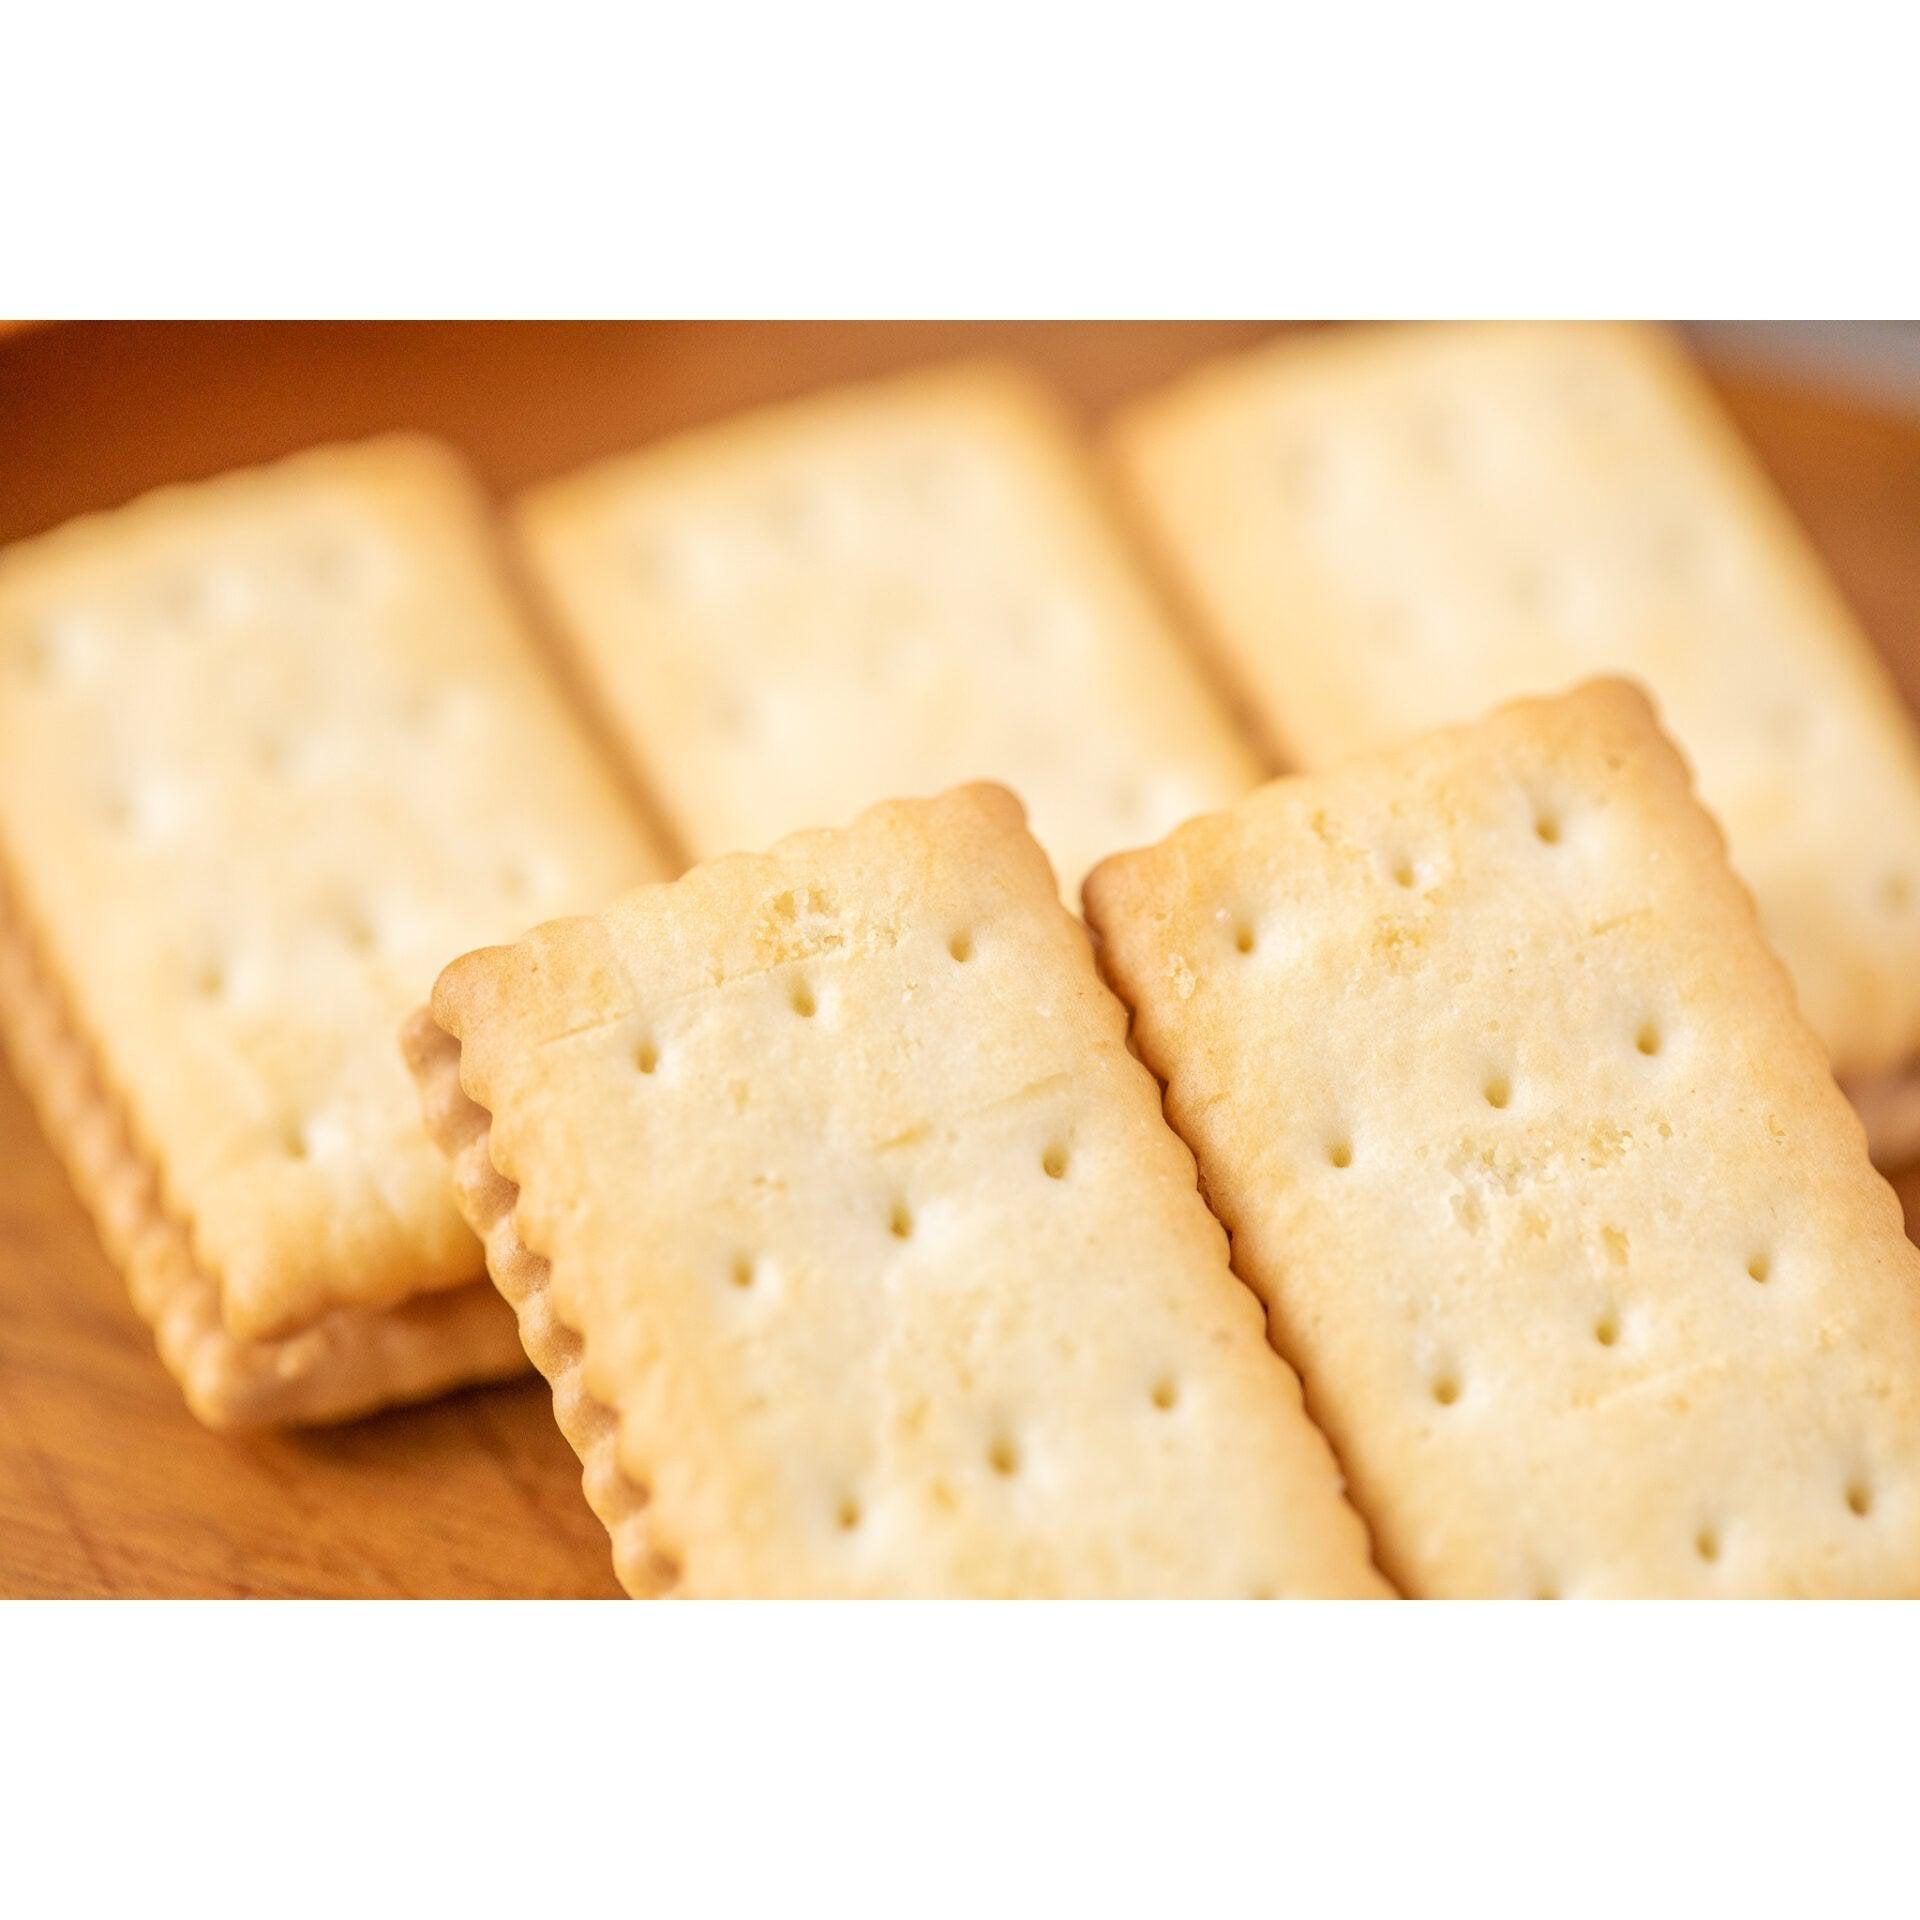 Glico Bisco Hokkaido Milk Cream Sandwich Biscuits 15 Pieces (Pack of 5)